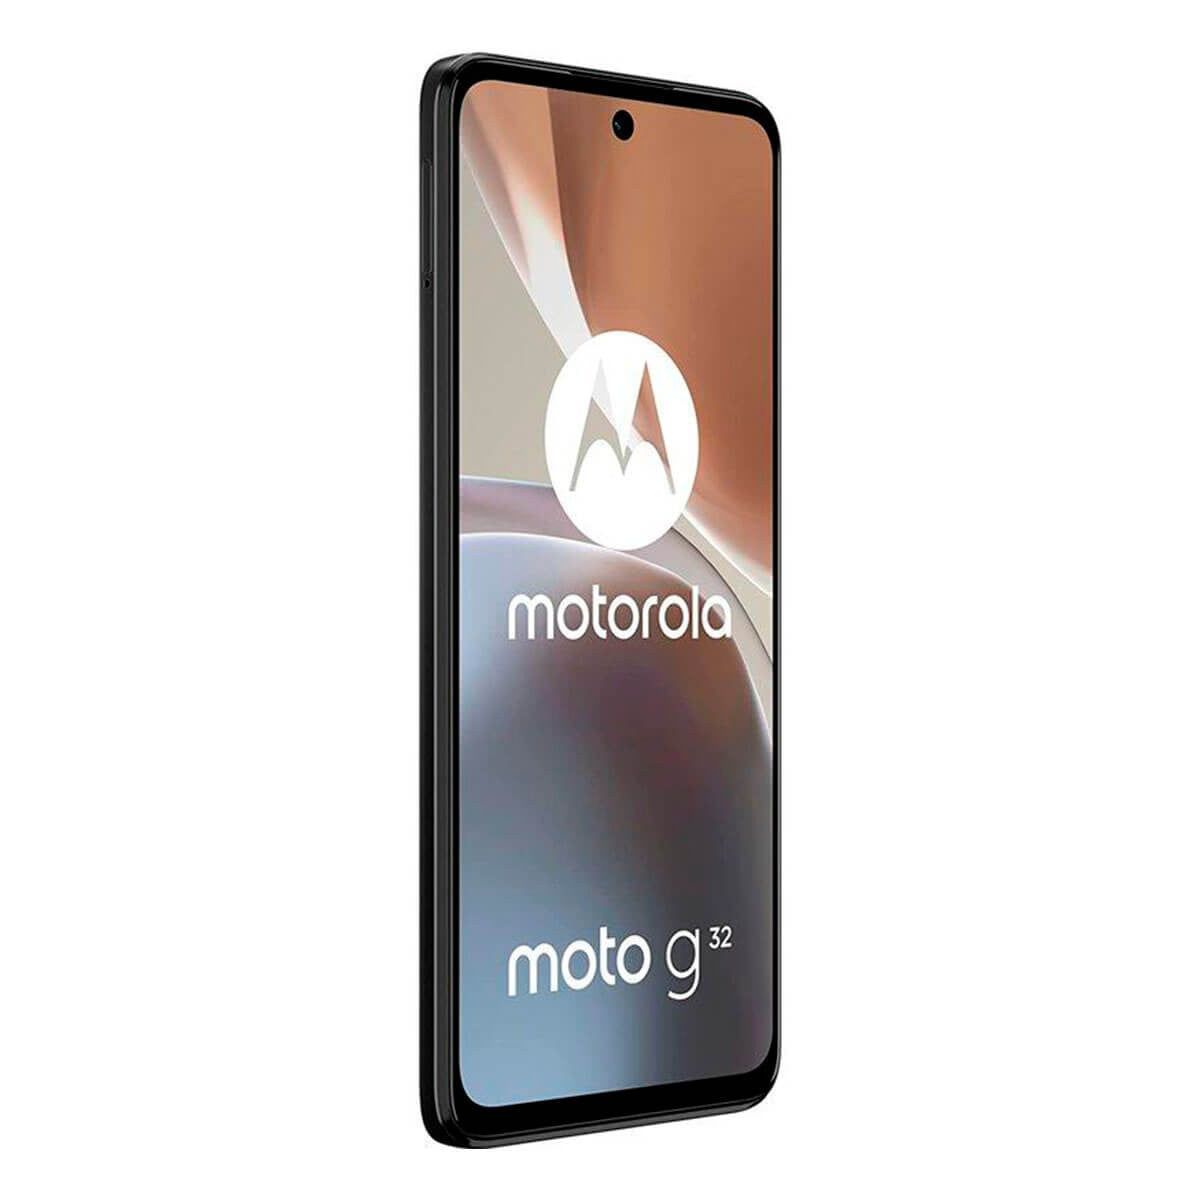 Motorola MOTO G32 6GB/128GB Gris Mineral (Mineral Grey) Dual SIM XT2235-2 Smartphone | Motorola